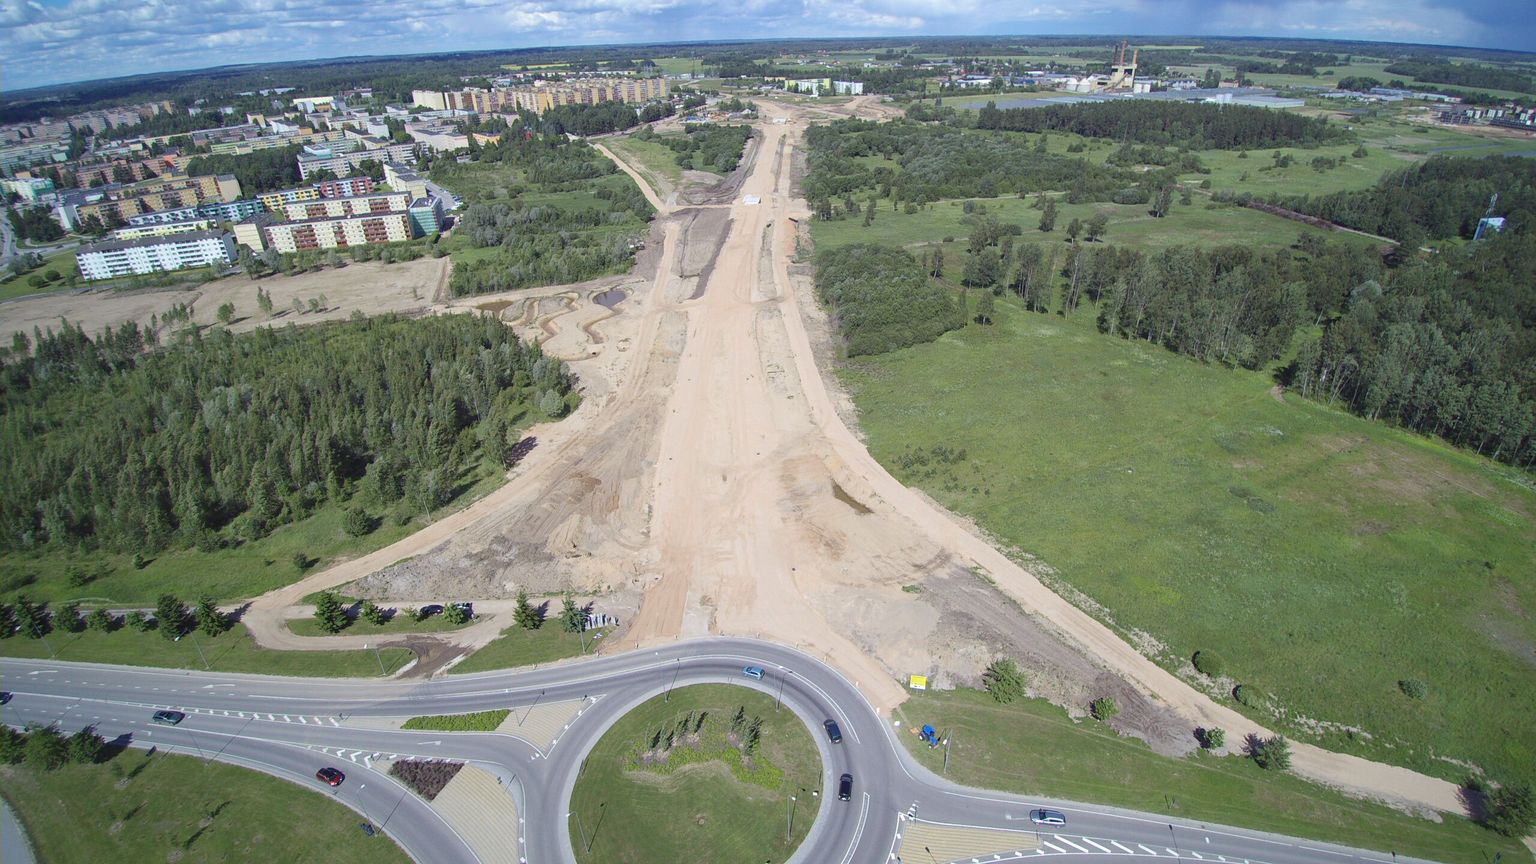 Idaringtee uus lõik, selle uued jalgteed ja kaks valminud viadukti paistavad Lammi tee poolt võetud droonifotolt hästi kätte. Paremale jäävad Luunja kasvuhooned, vasemale Mõisavahe kortermajad.